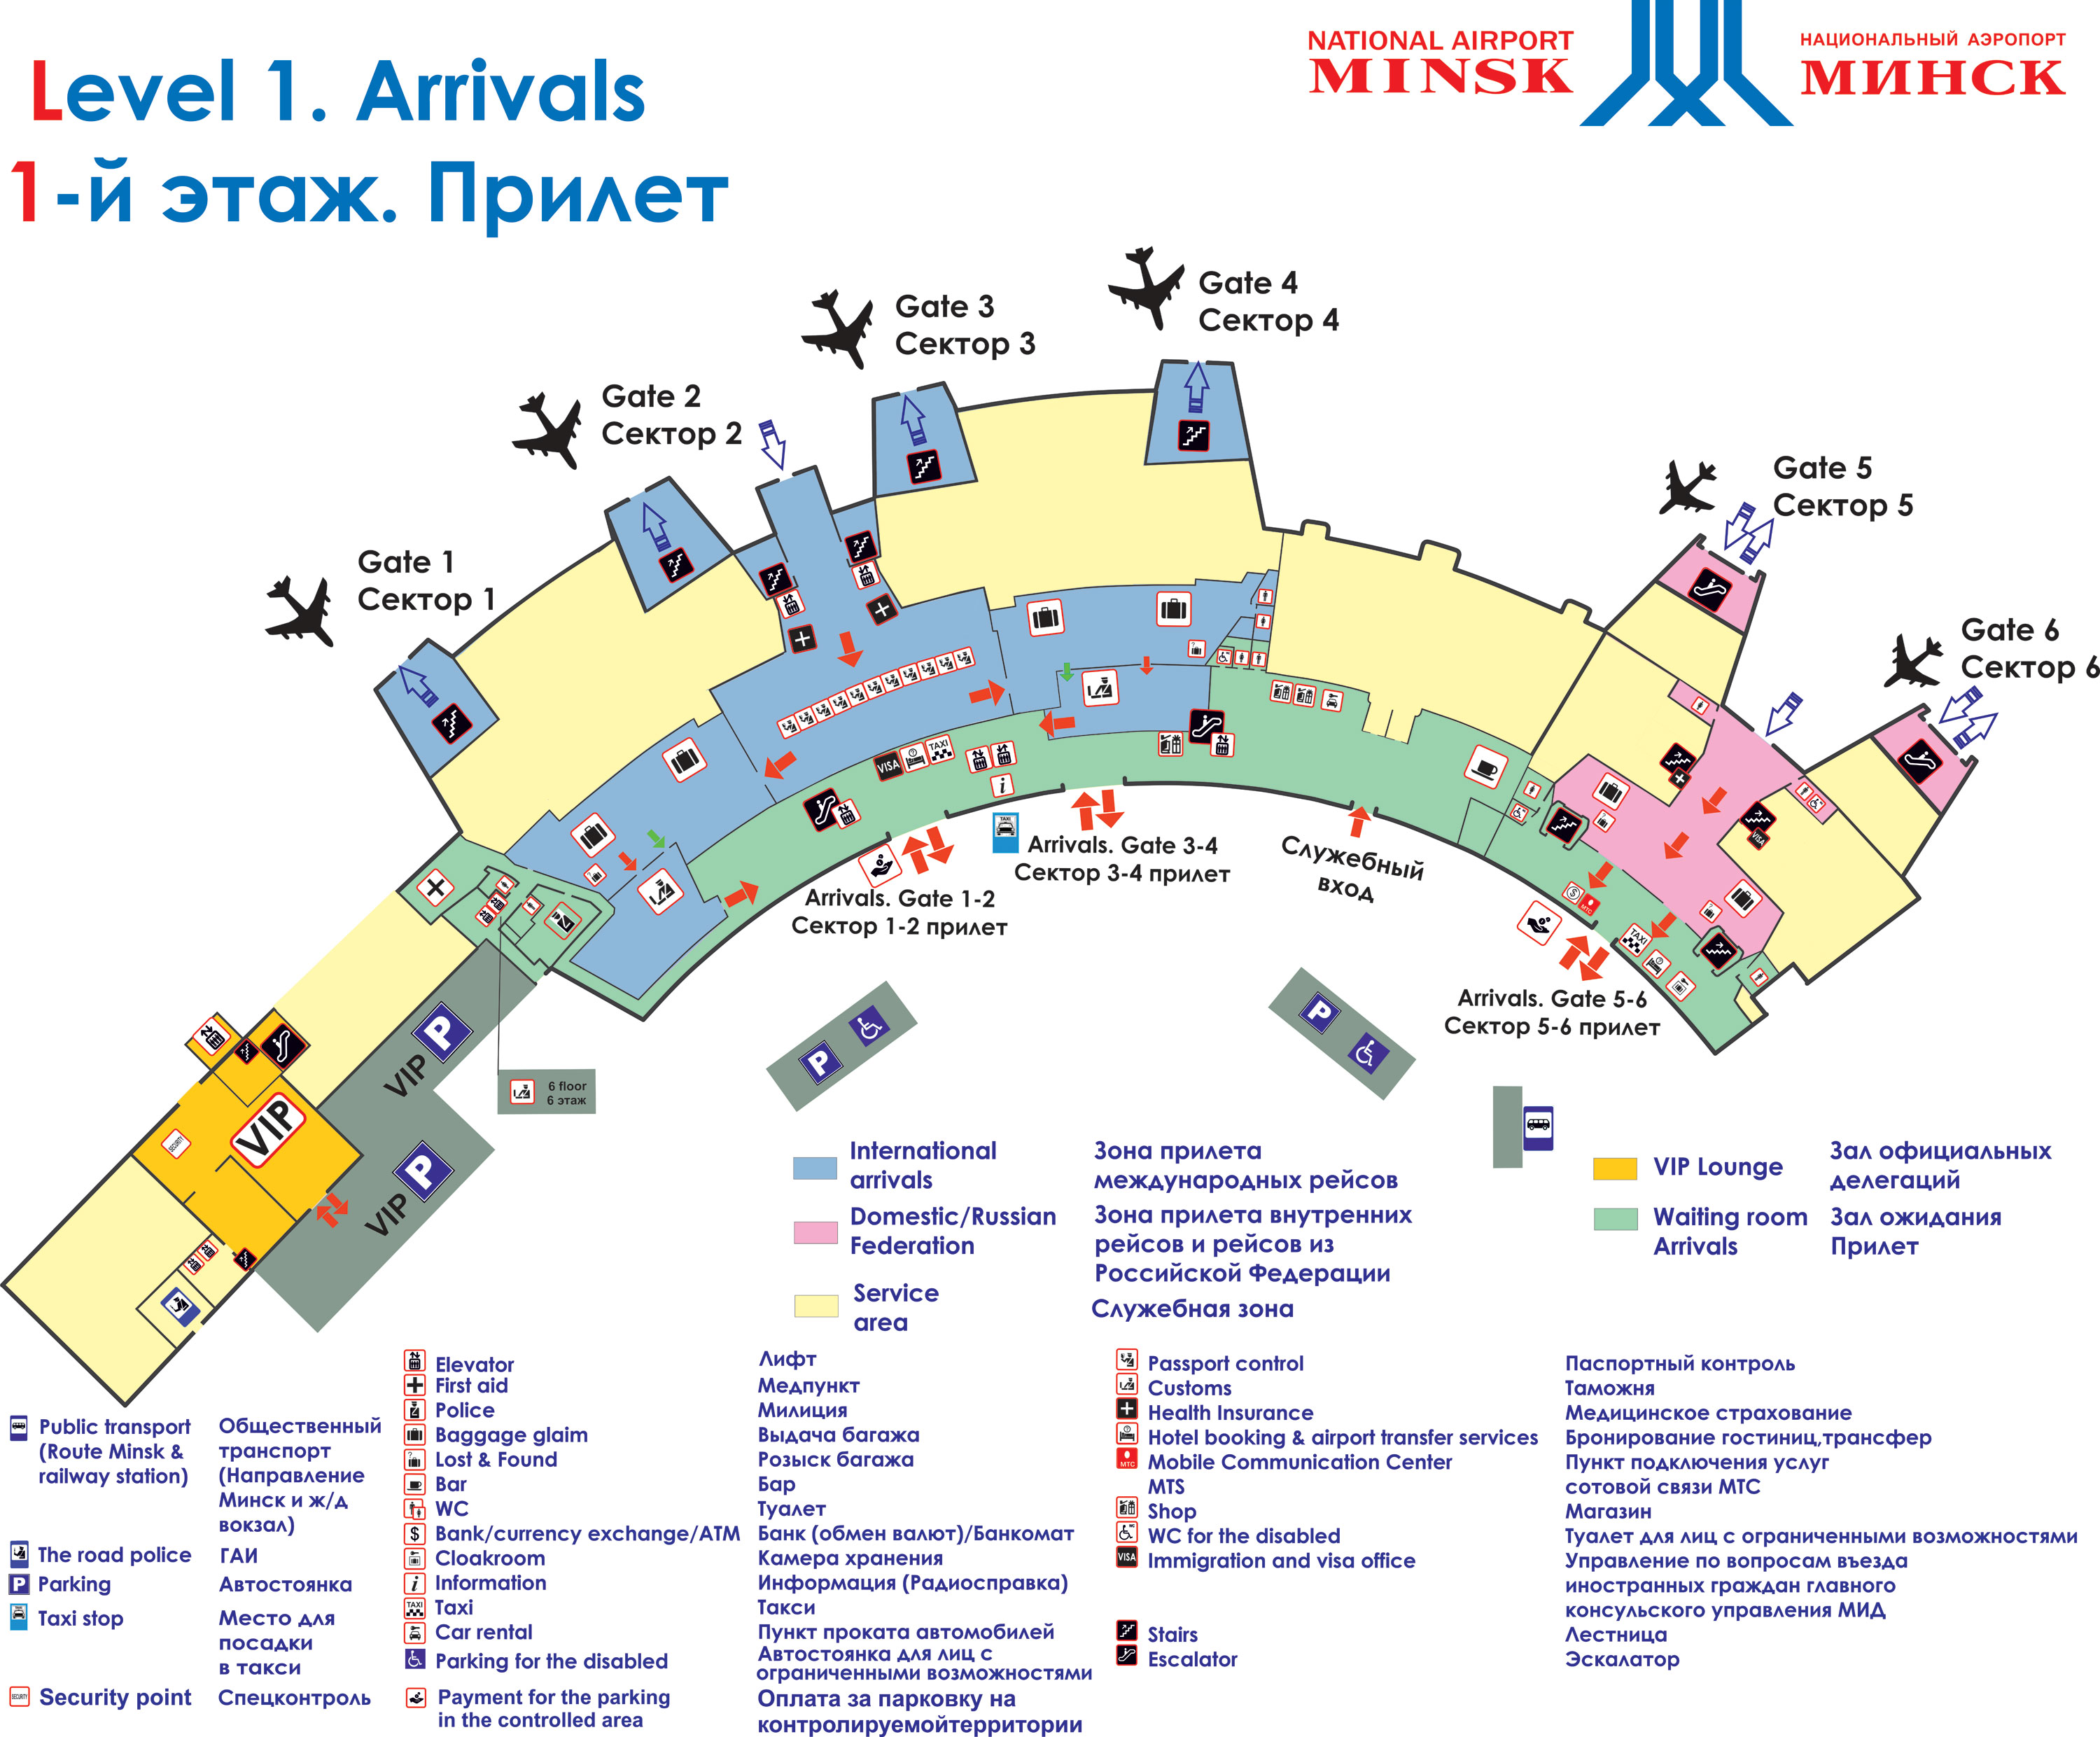 Схема проходження трансферу в аеропорту Мінськ